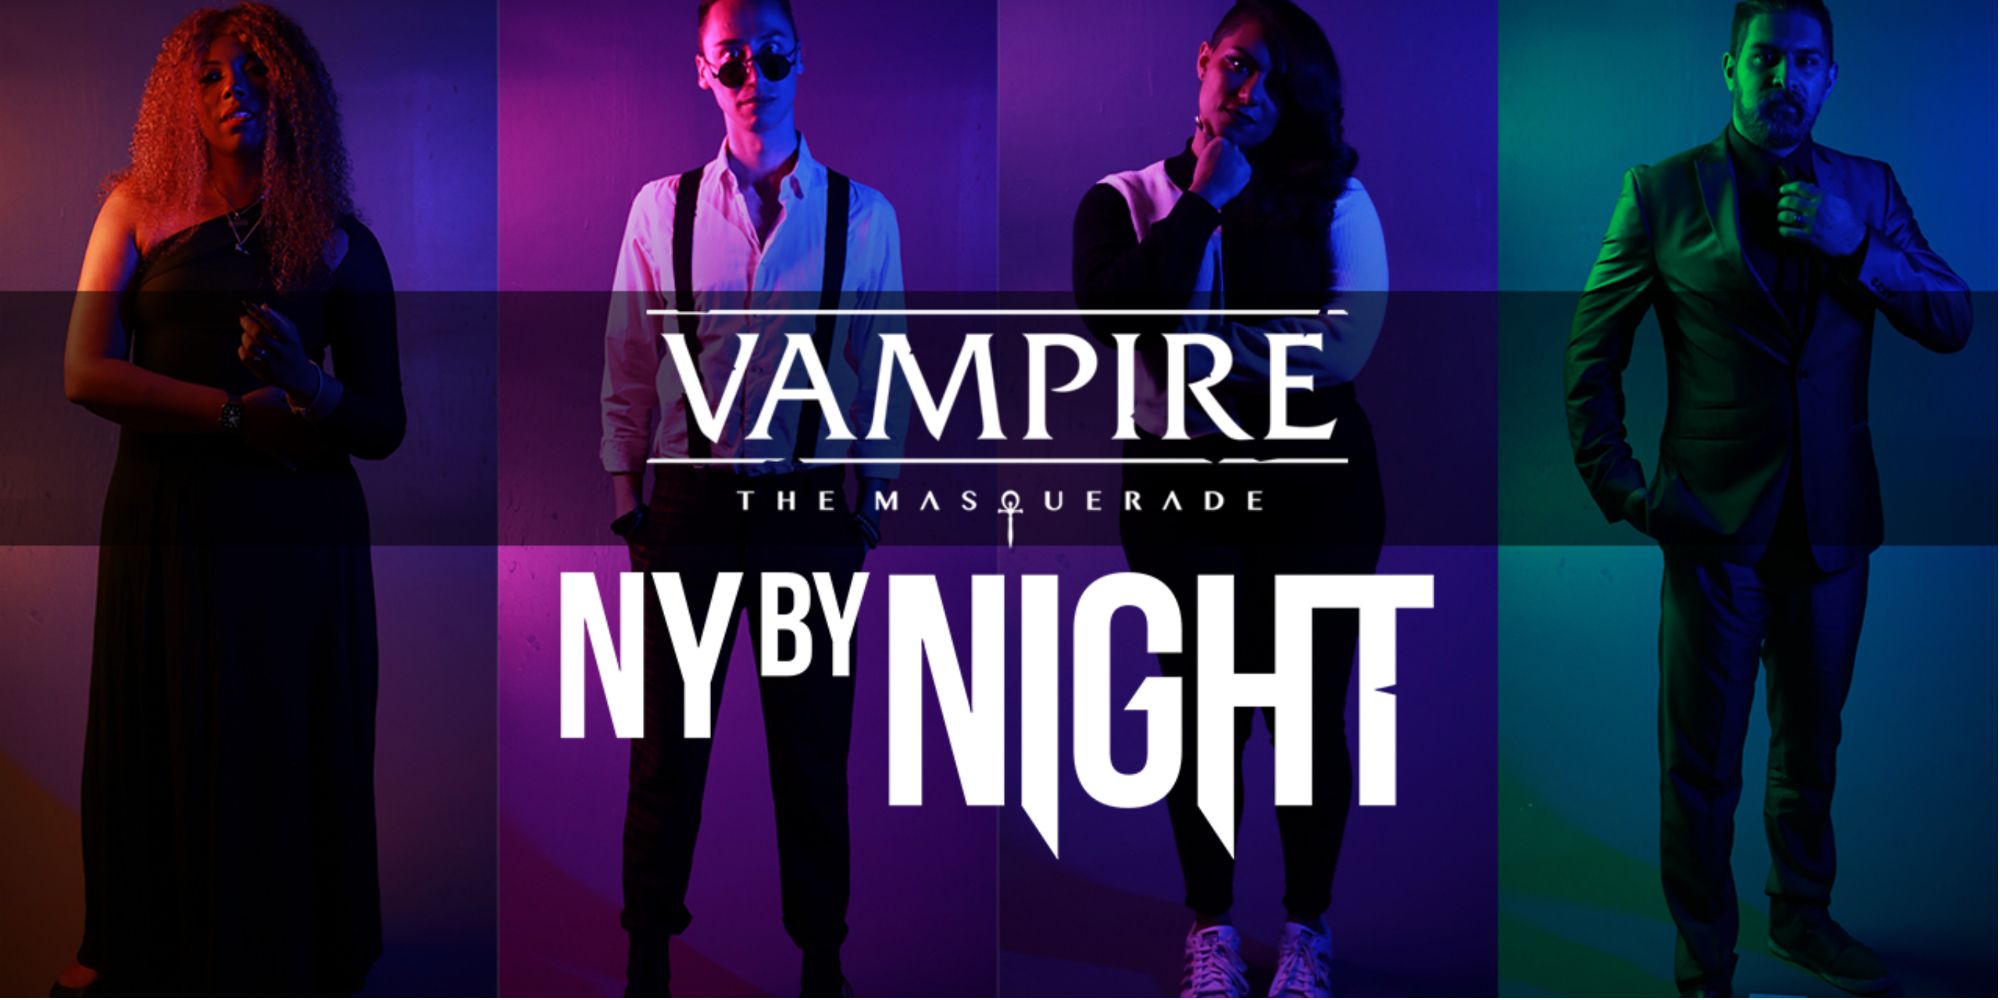 Vampire: The Masquerade's New York By Night Season 1 debuta el 1 de julio